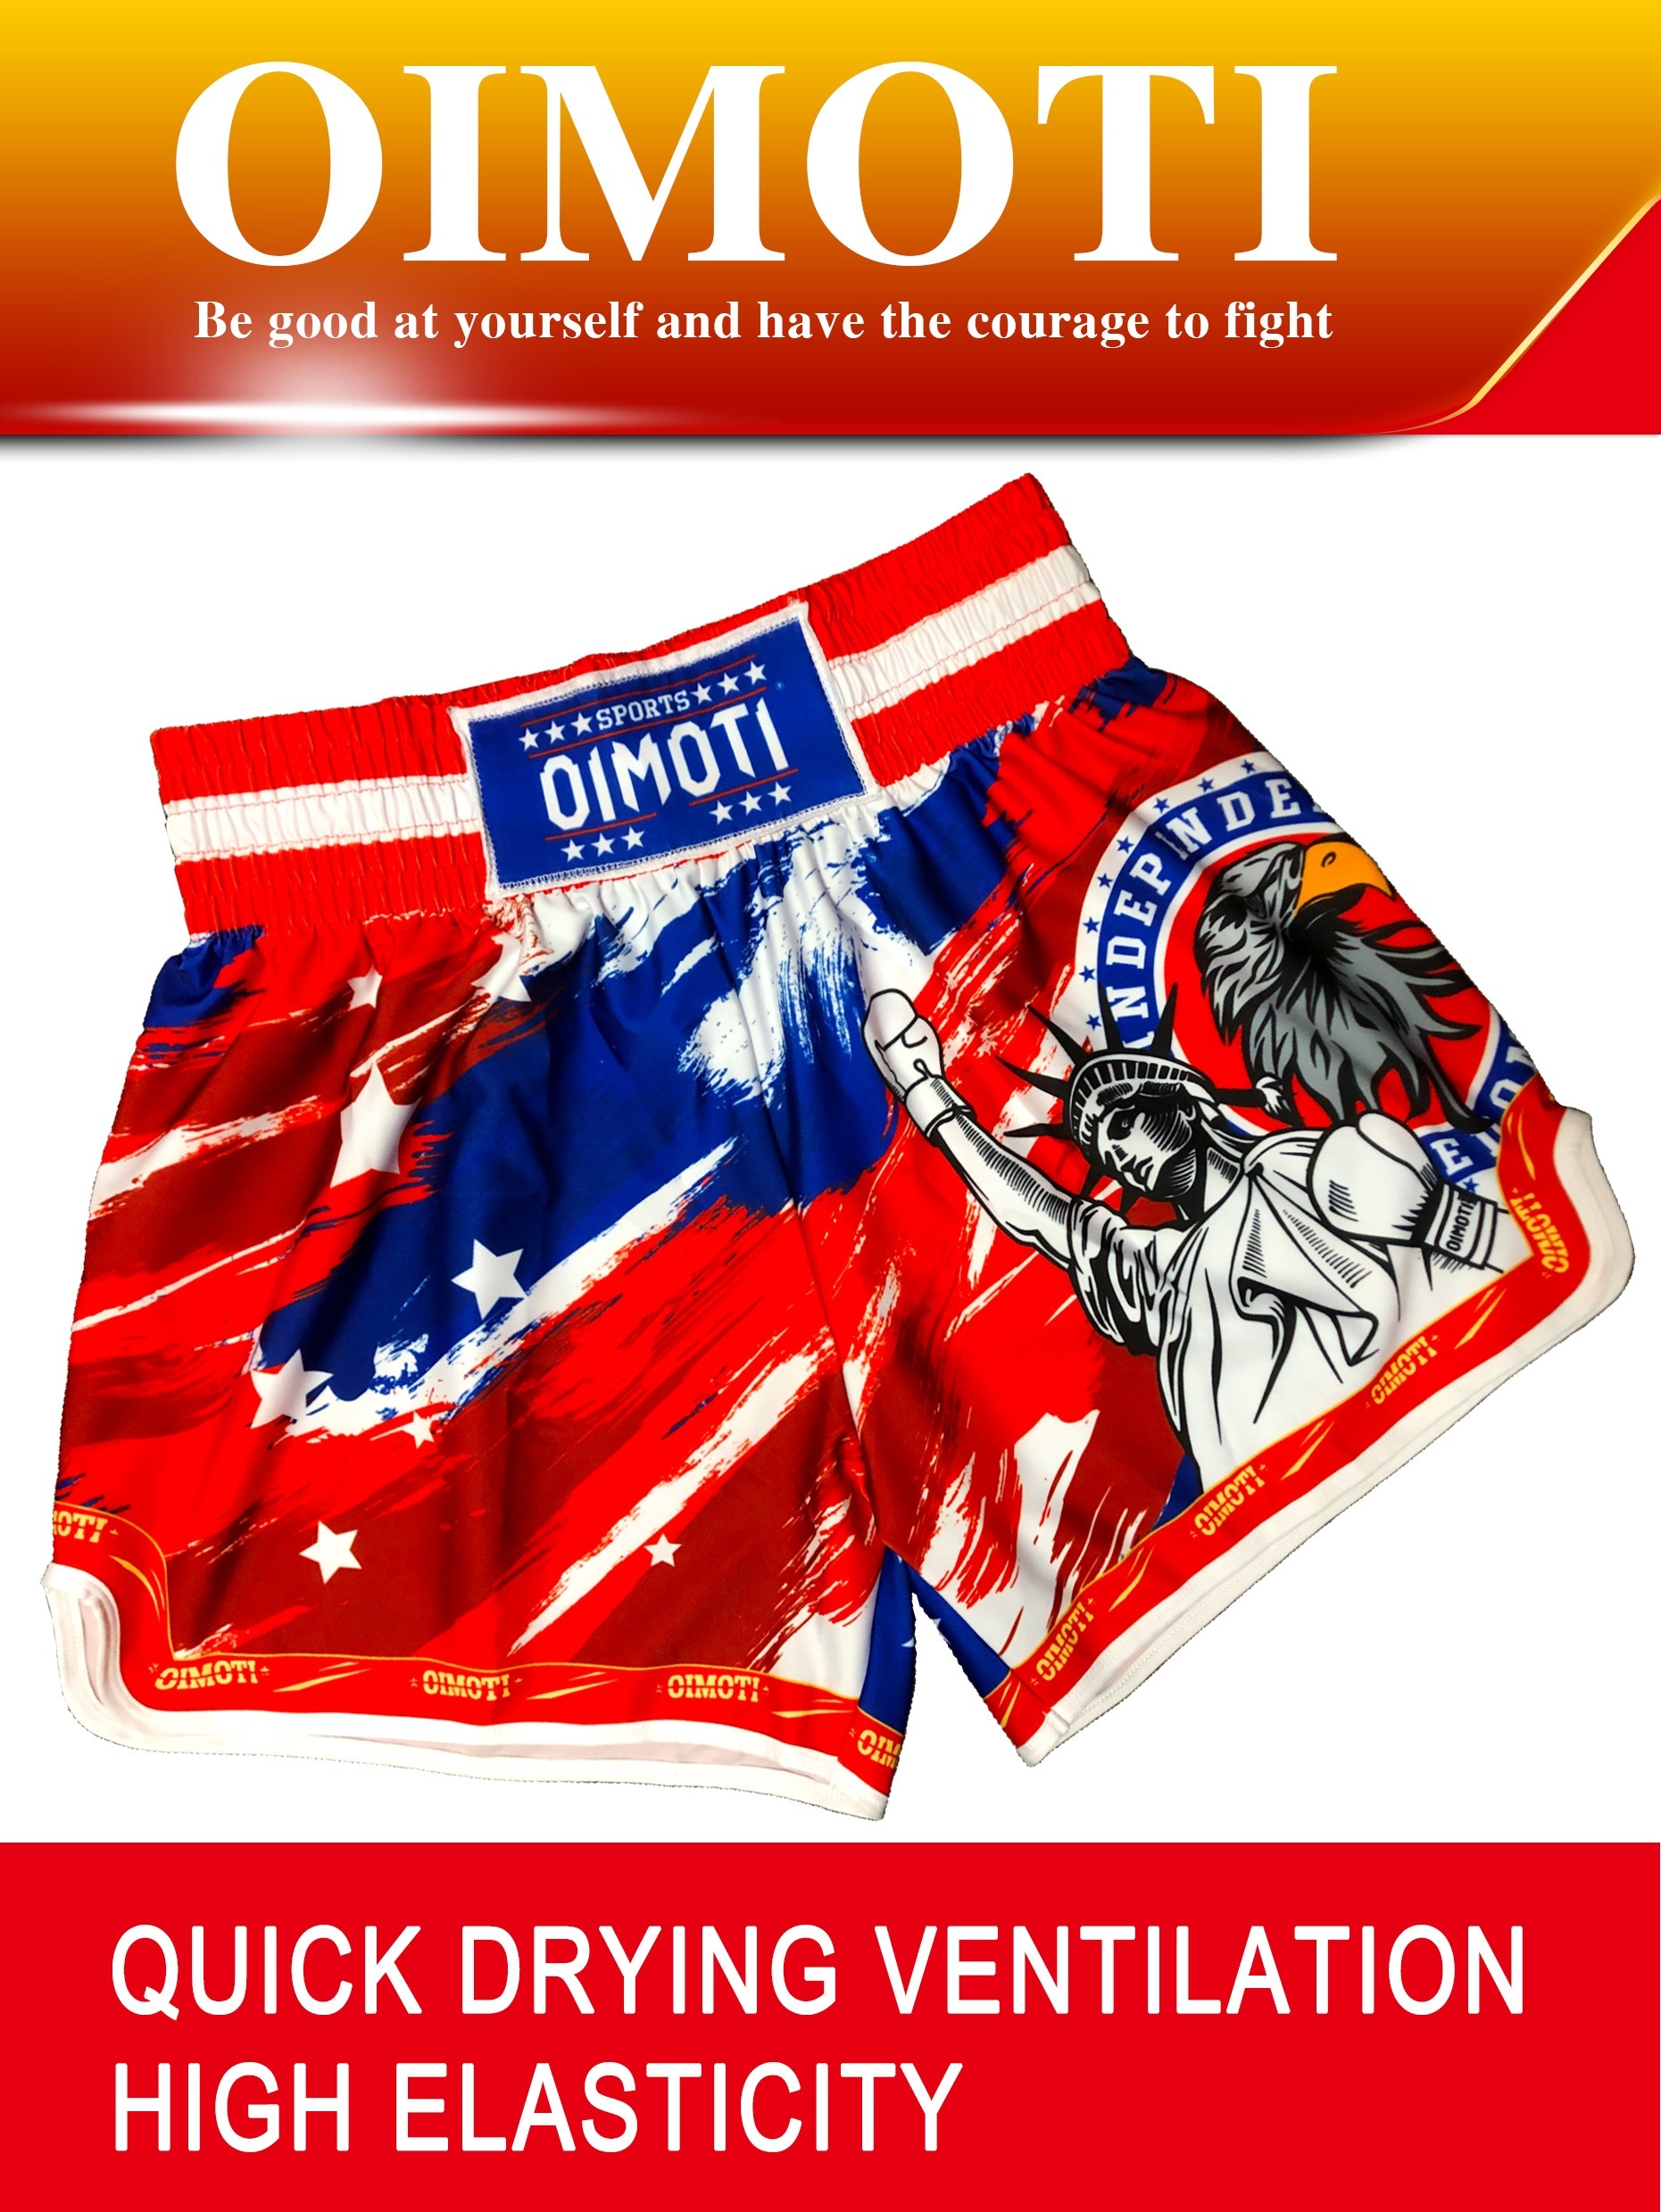 Pantalones Cortos Muay Thai Estampado Tailandés Estrellas - Temu